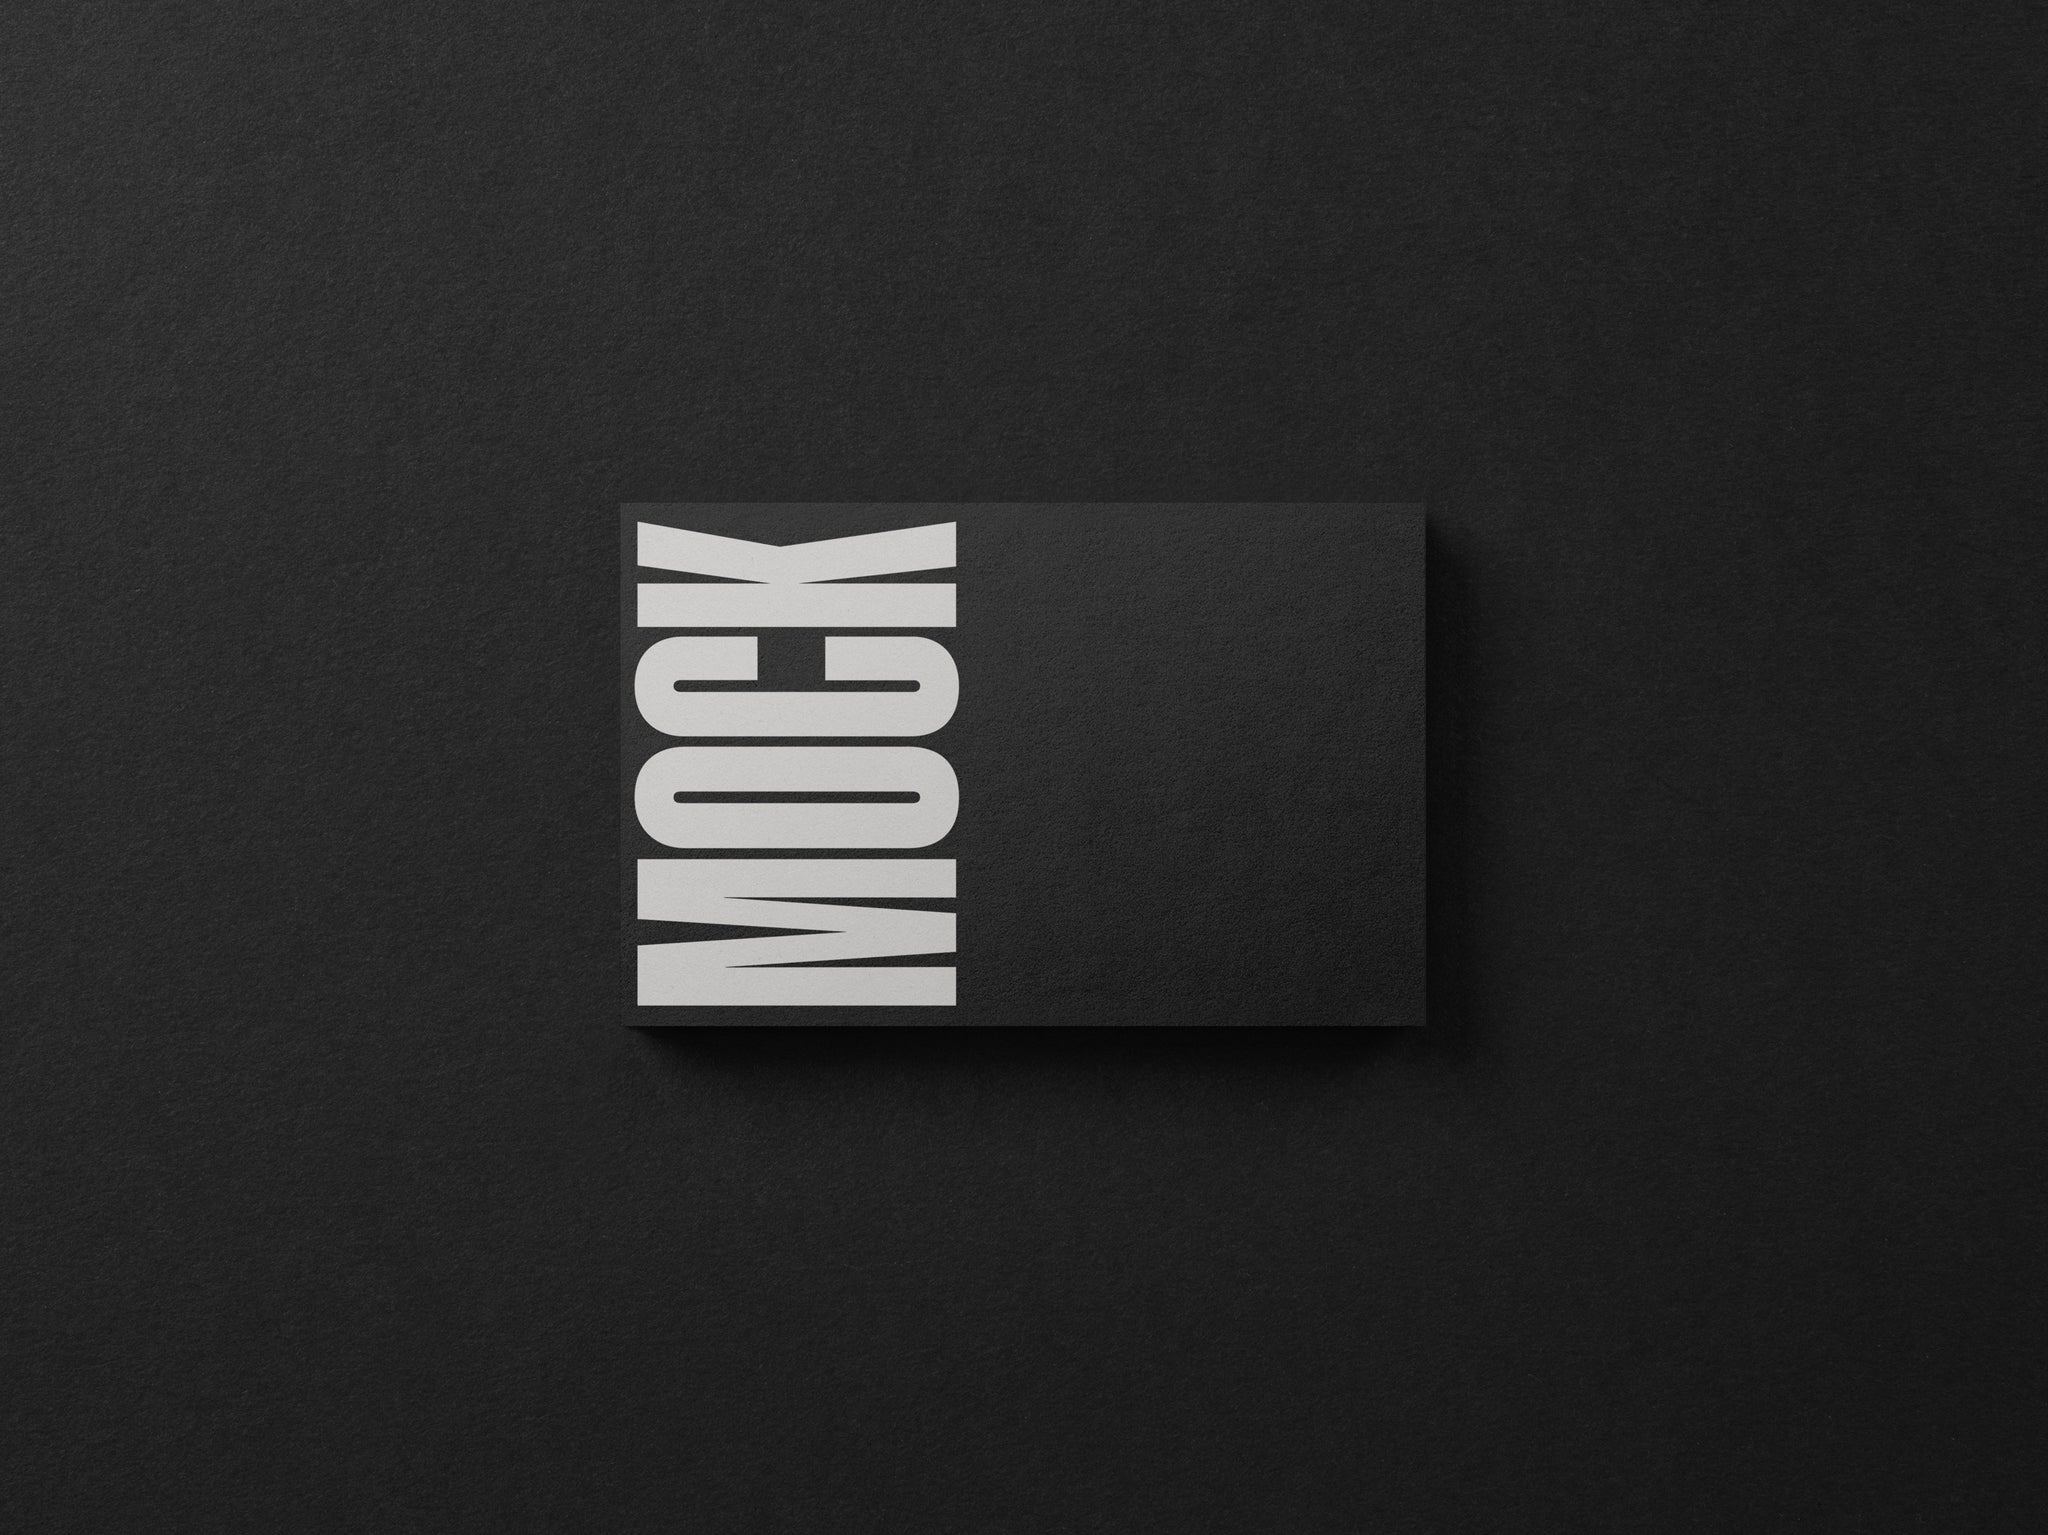 Branding Mockup Bundle 'Noir' - 6 Stationery Mockups